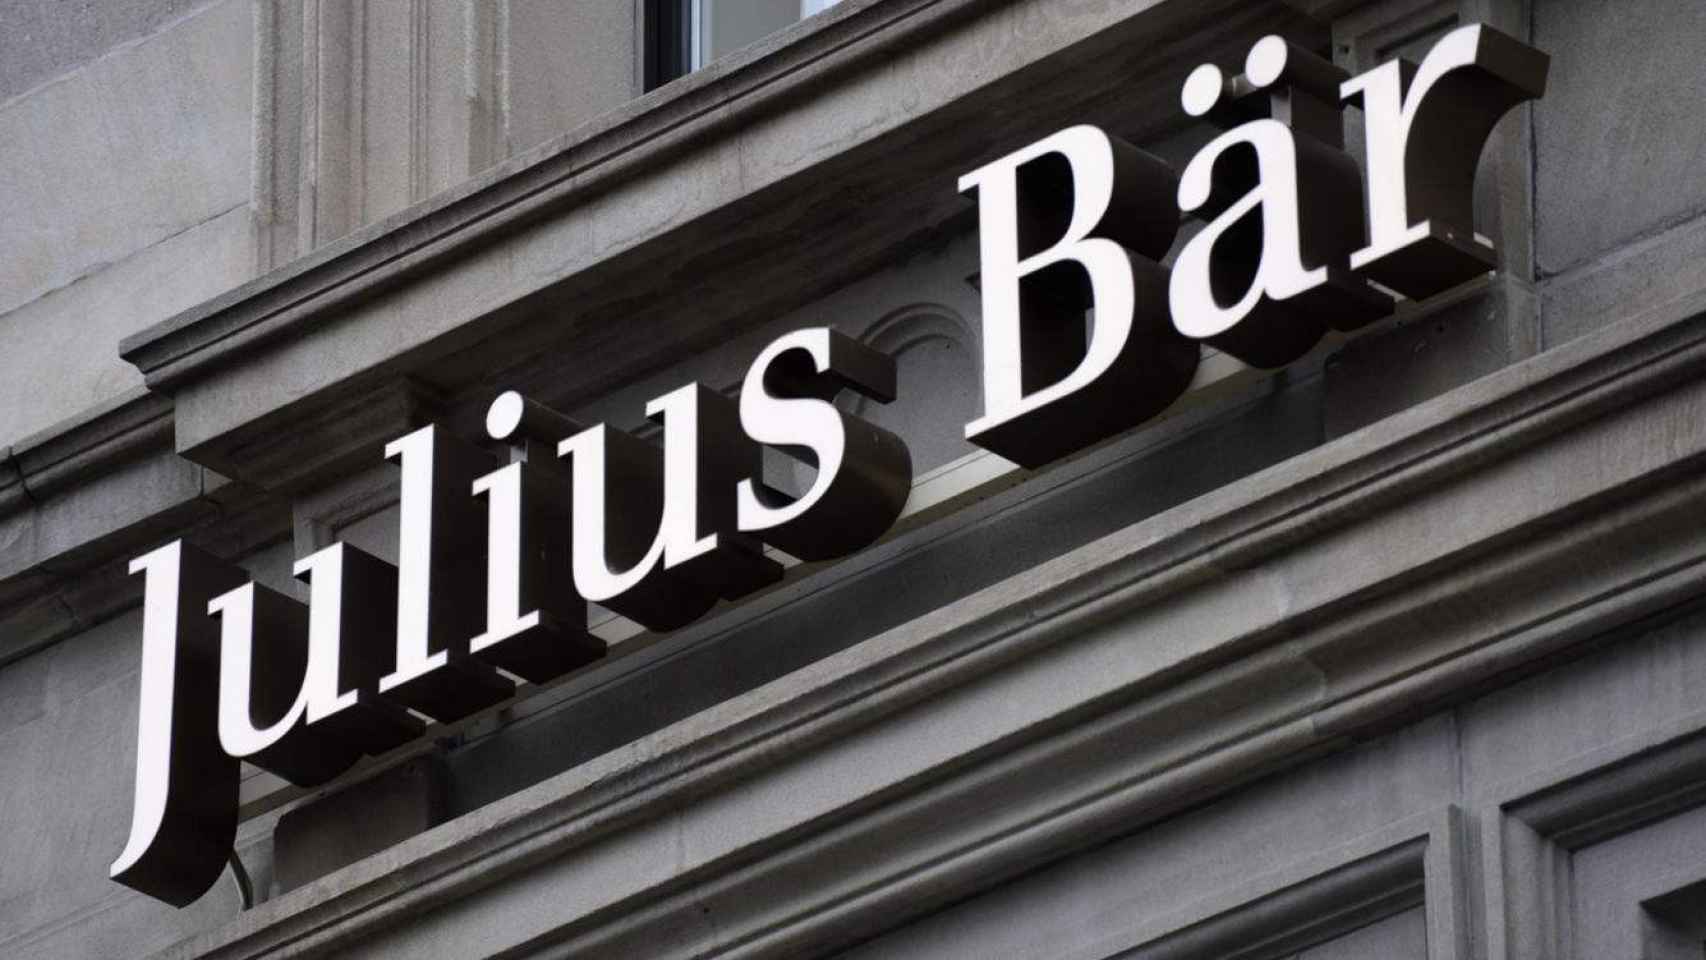 Julius Baer, entidad suiza de banca privada, se interesa por las inmobiliarias españolas a través de Kairos, su filial italiana